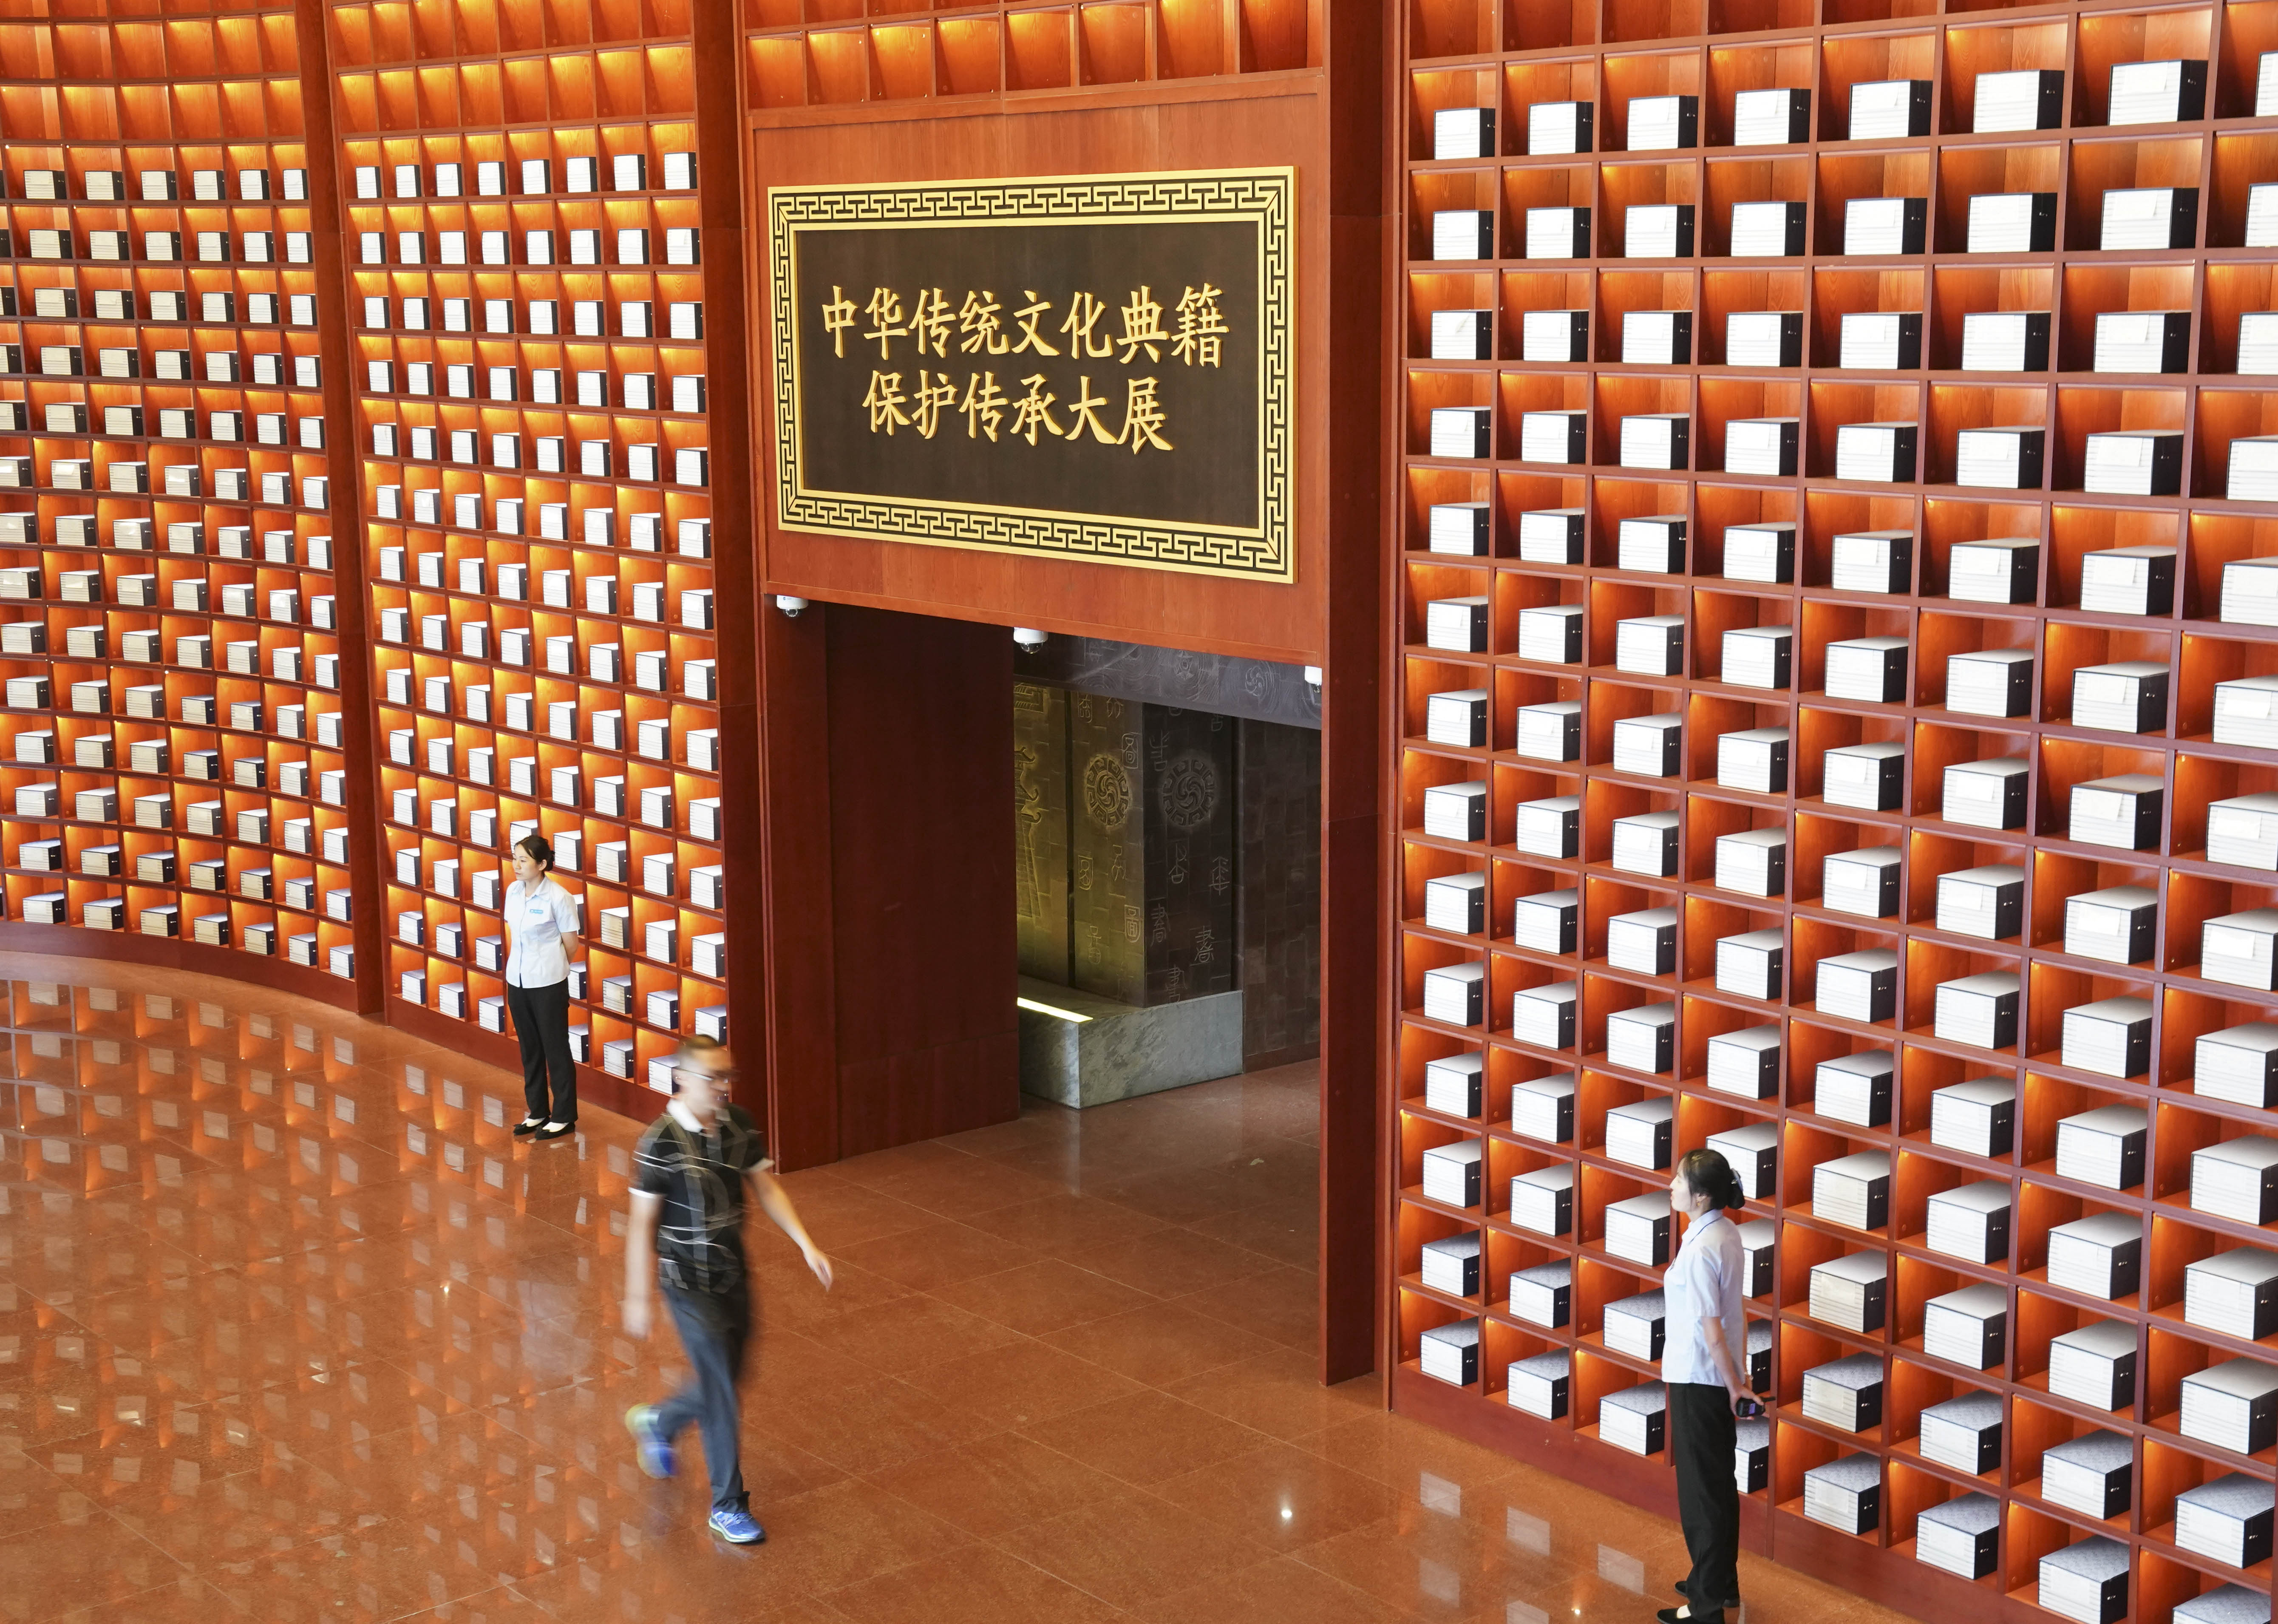 新华社@"中华传统文化典籍保护传承大展"在国家图书馆